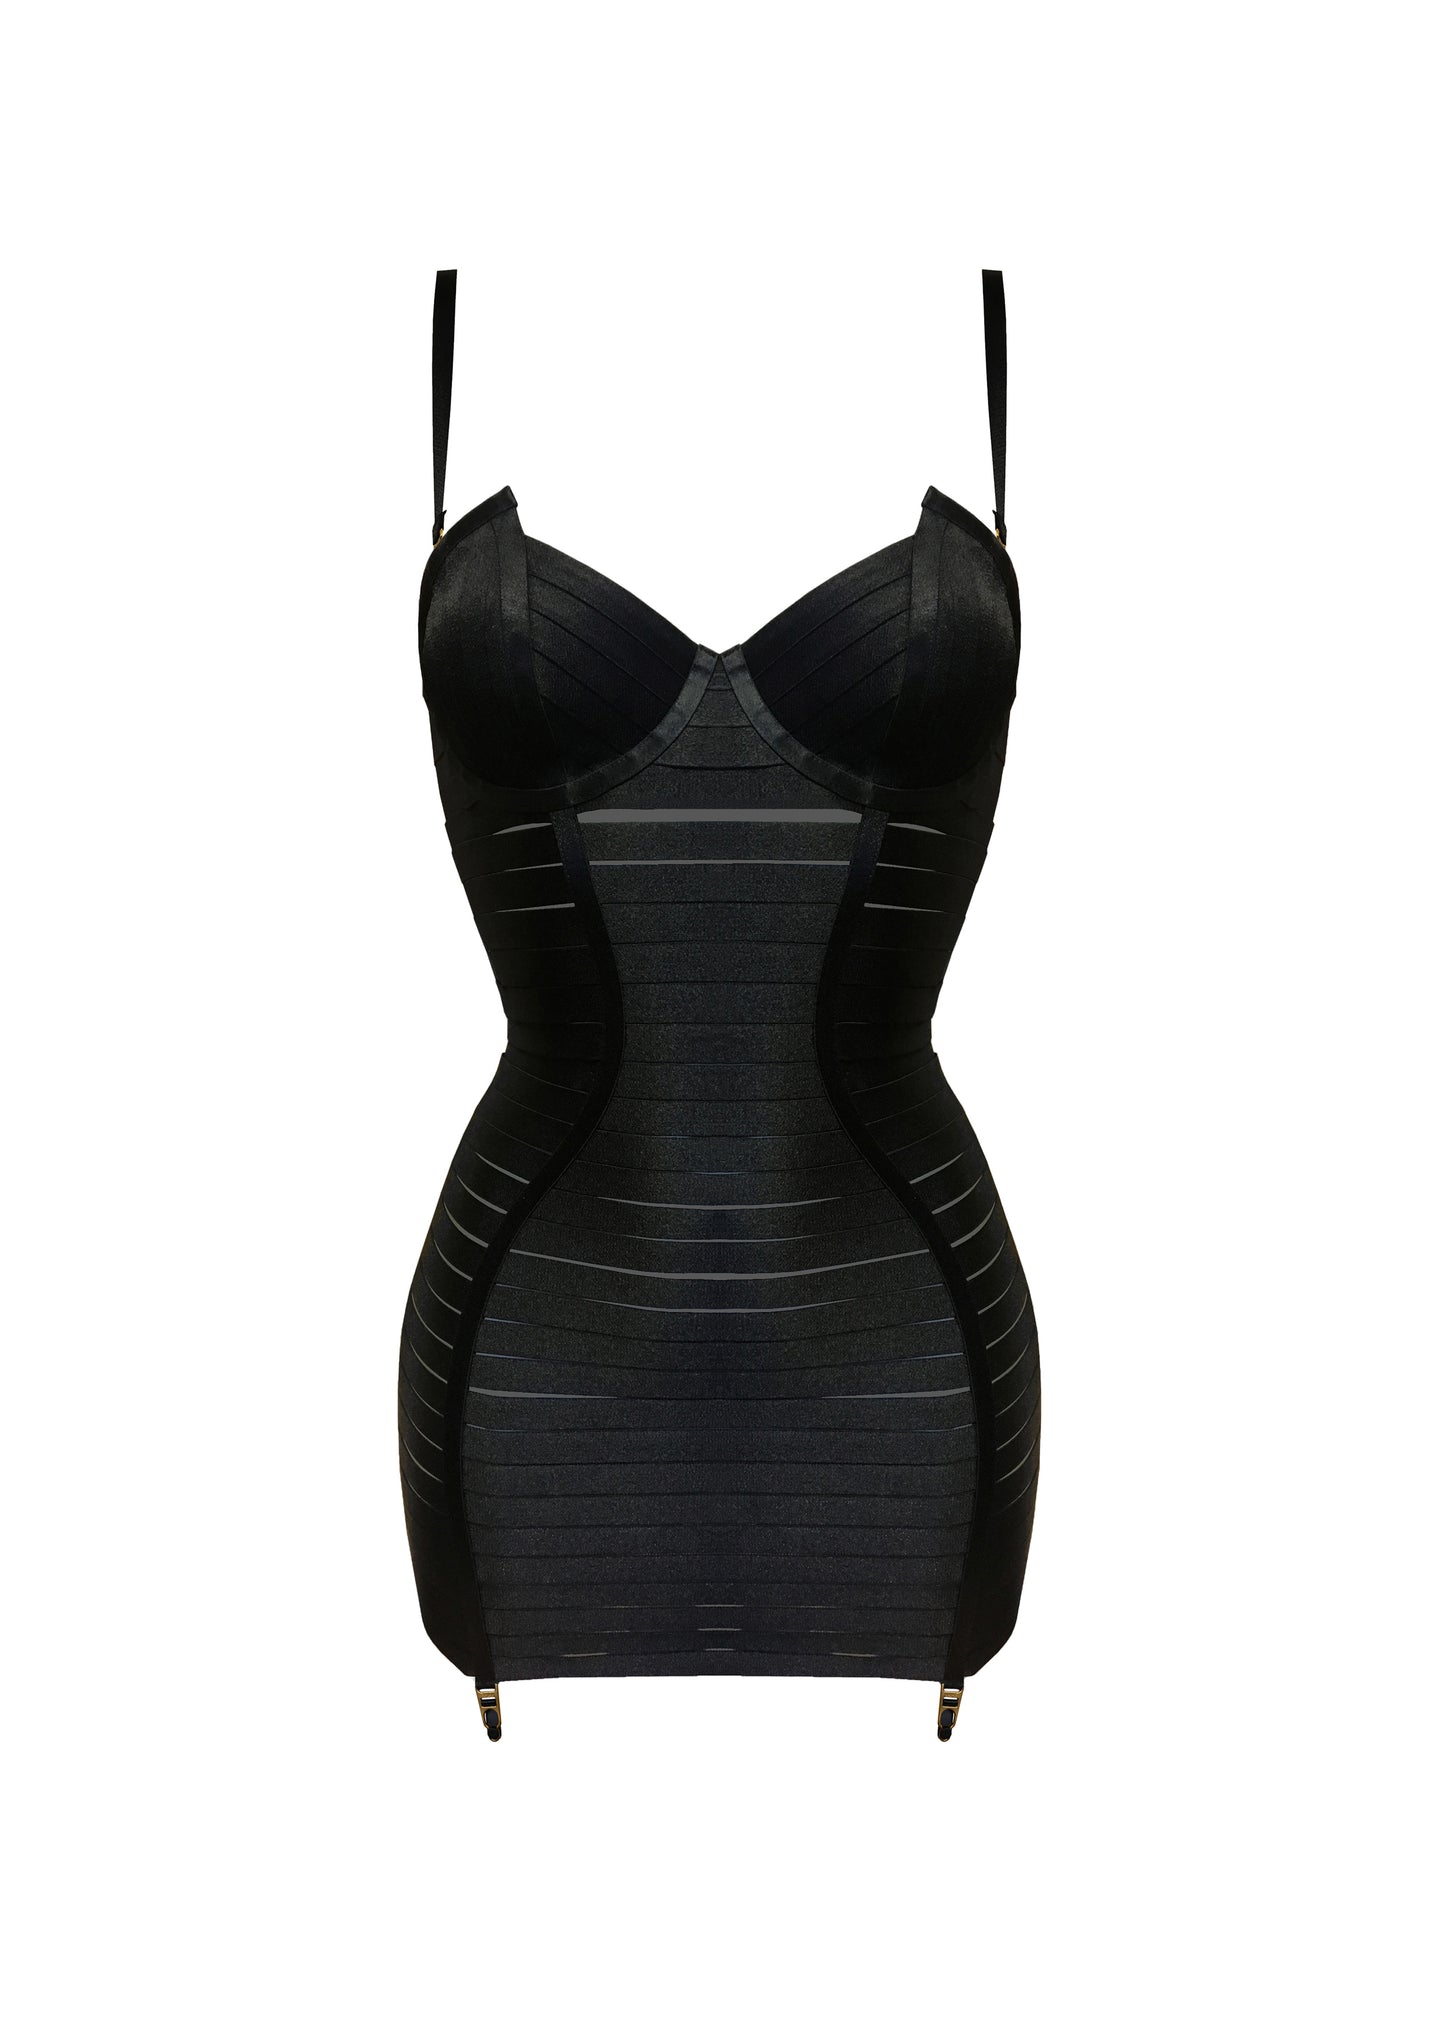 Black Adjustable Angela Dress